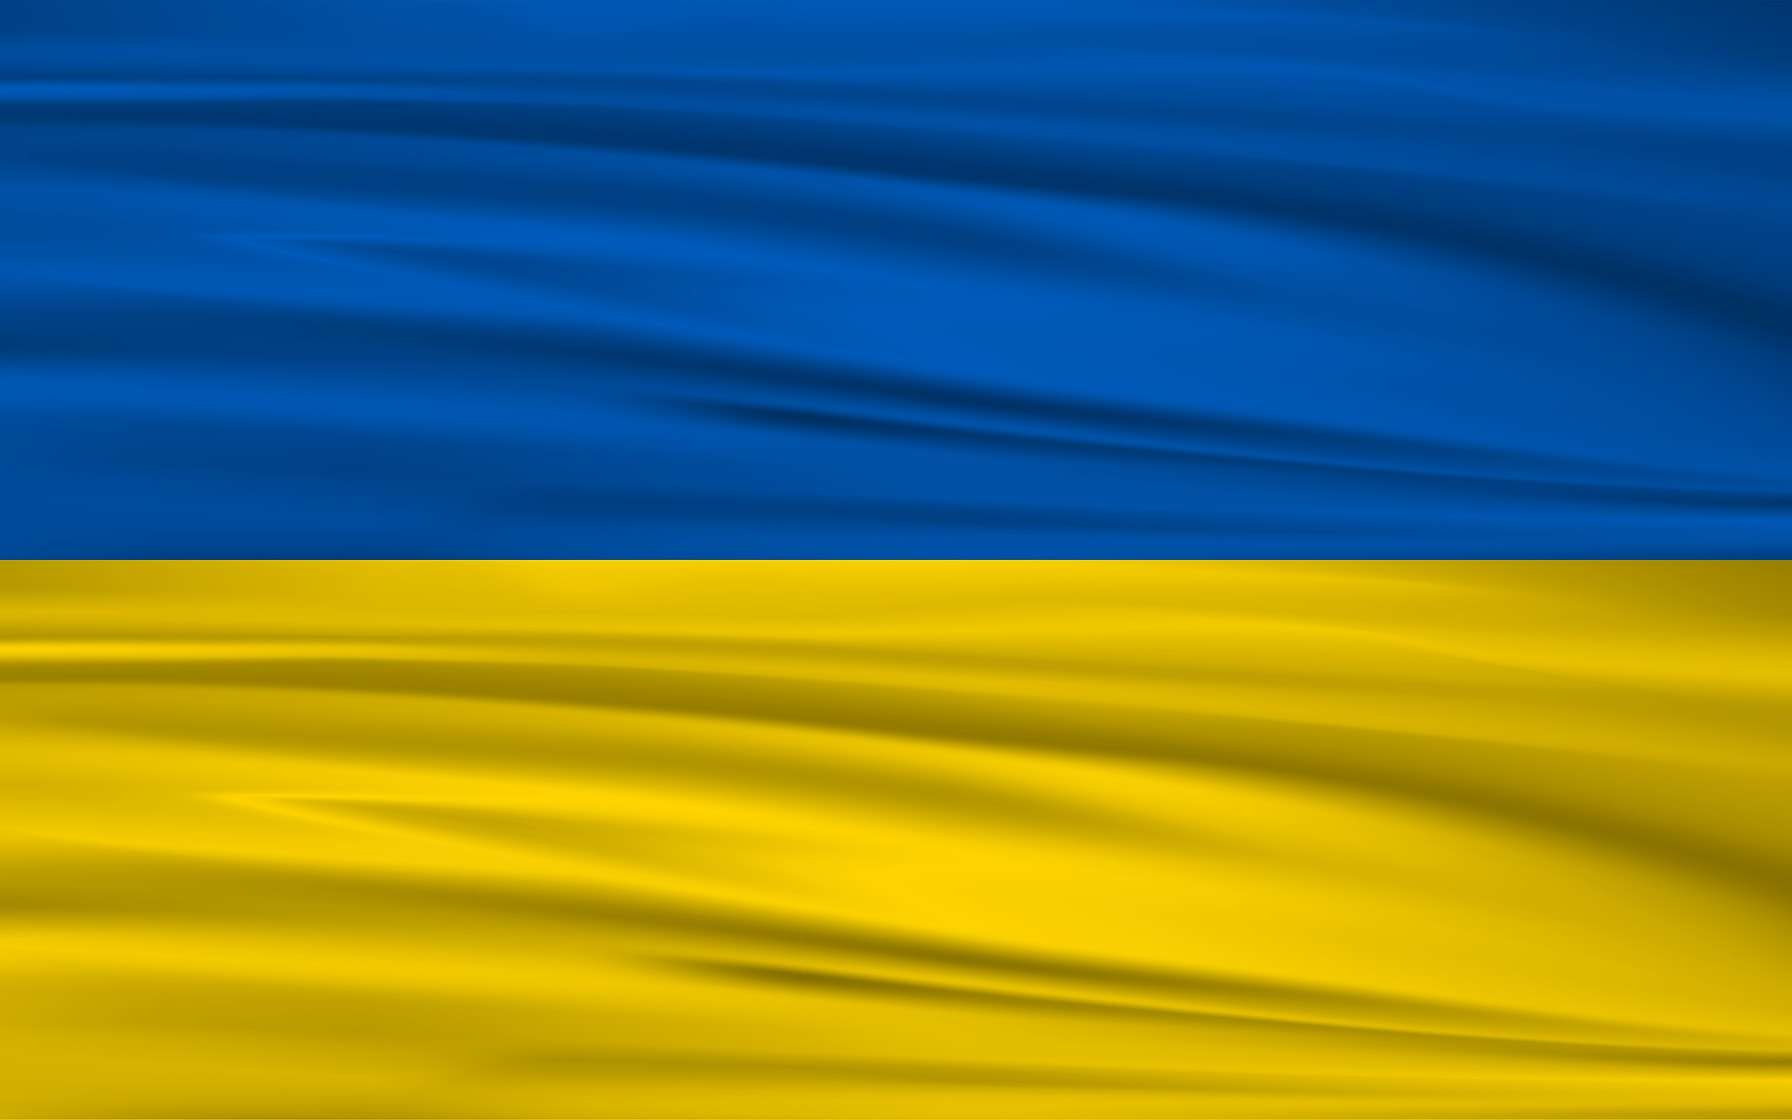 Sans l’Osint, le recueil des preuves des crimes commis en Ukraine serait très difficile, voire impossible, alors que la guerre fait rage. © Satheesh Sankaran, Pixabay